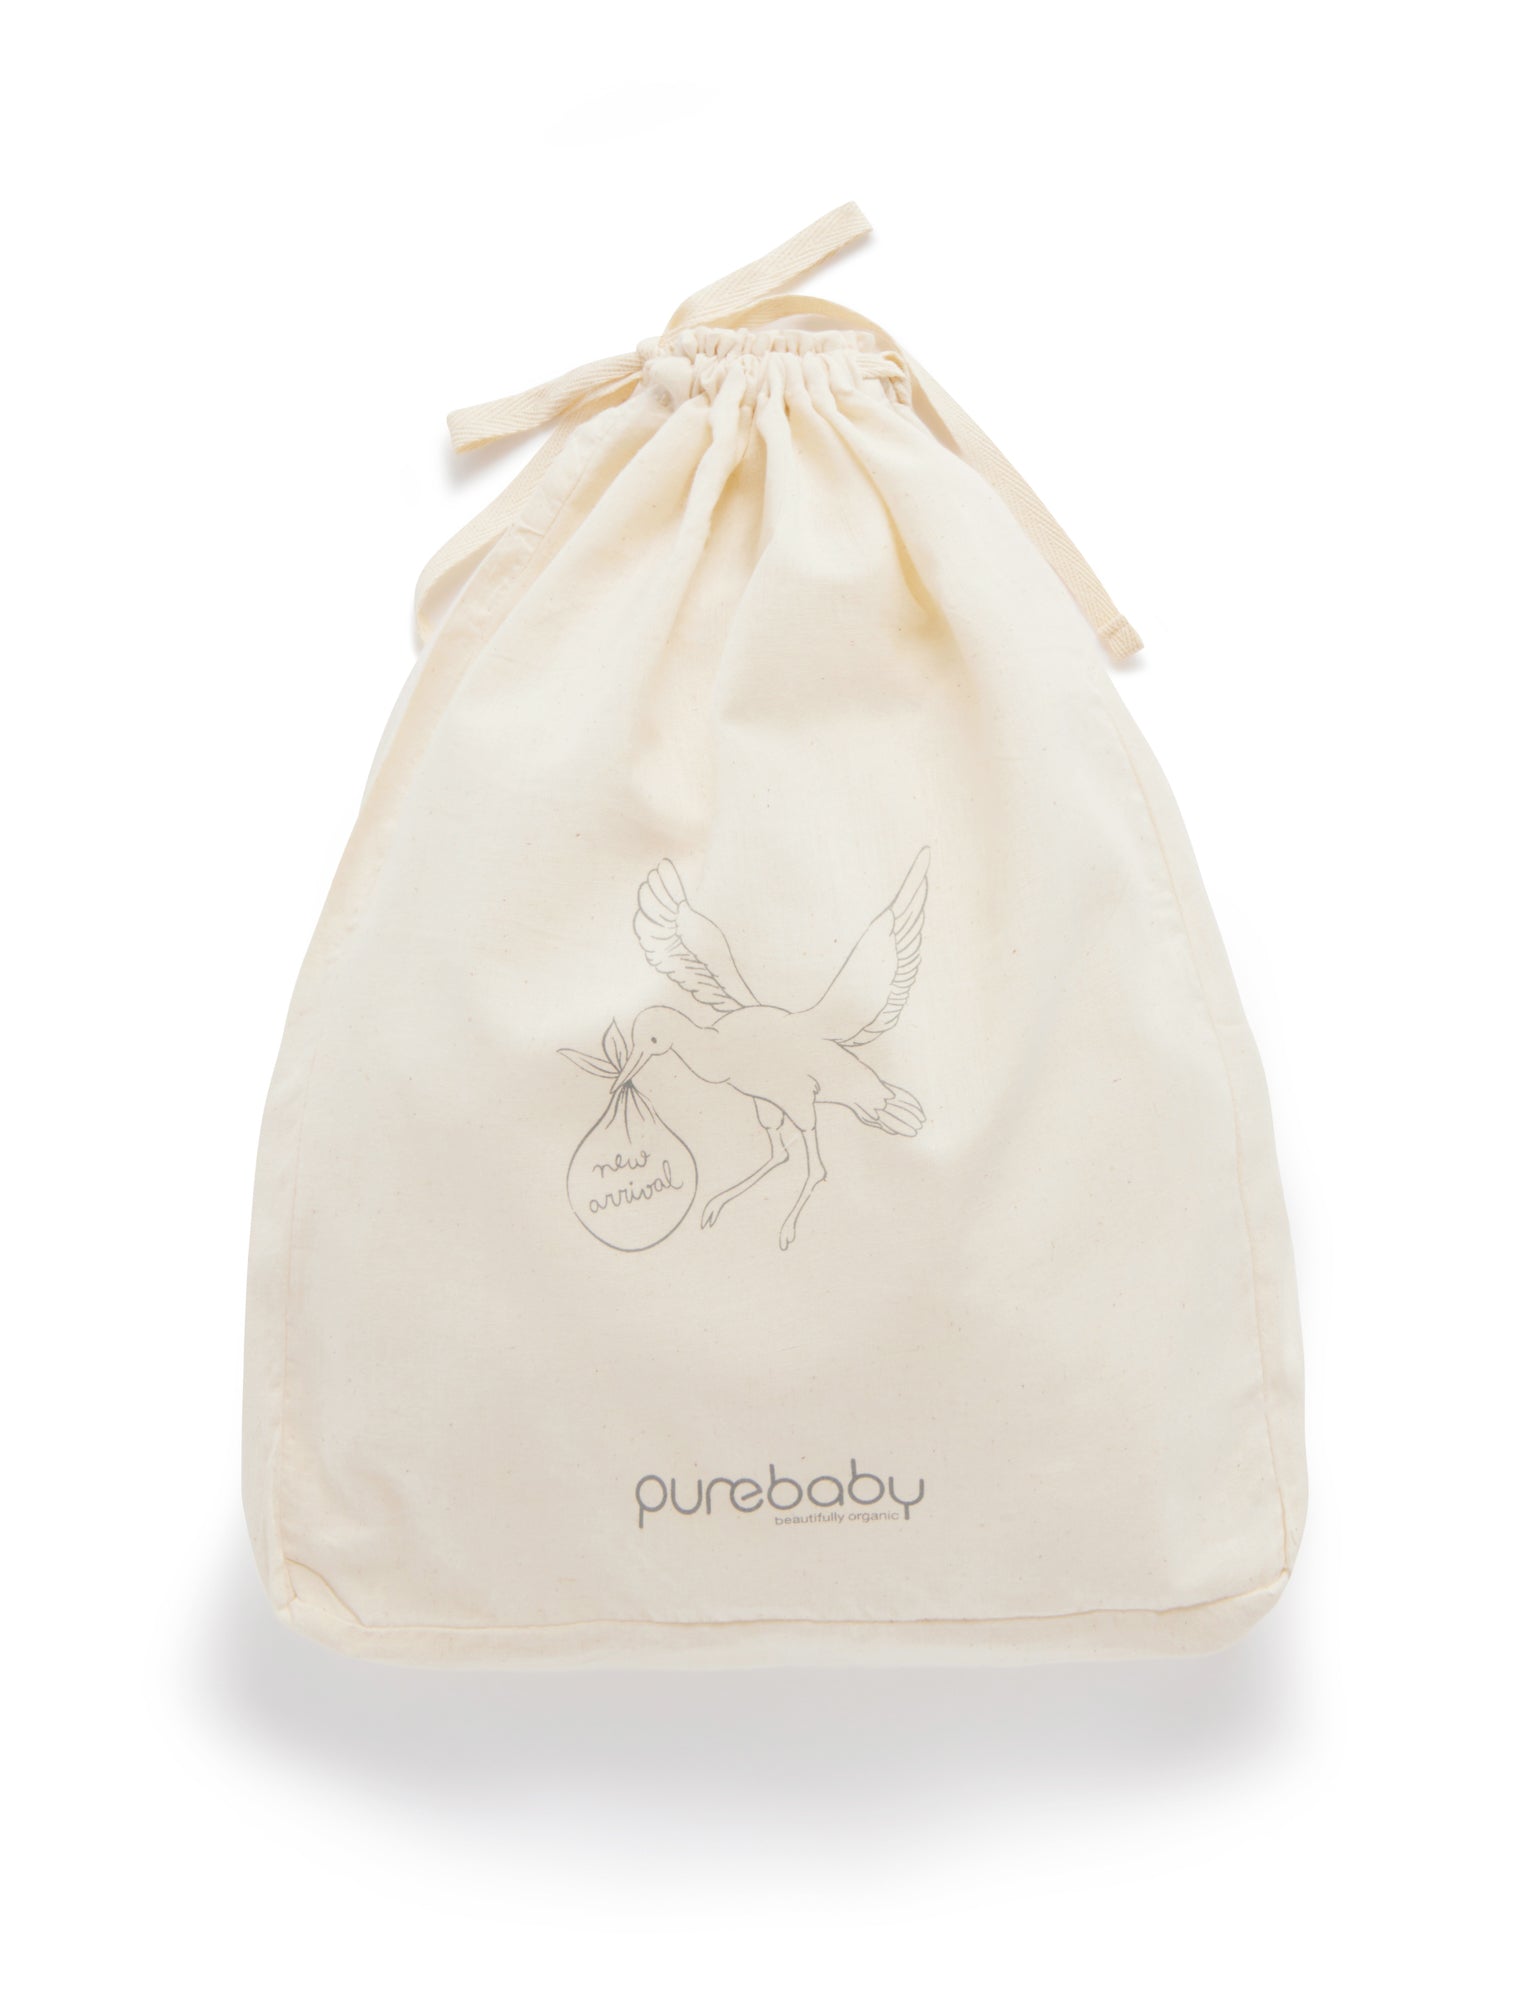 Purebaby Essentials New Born Dandelion Gift Set